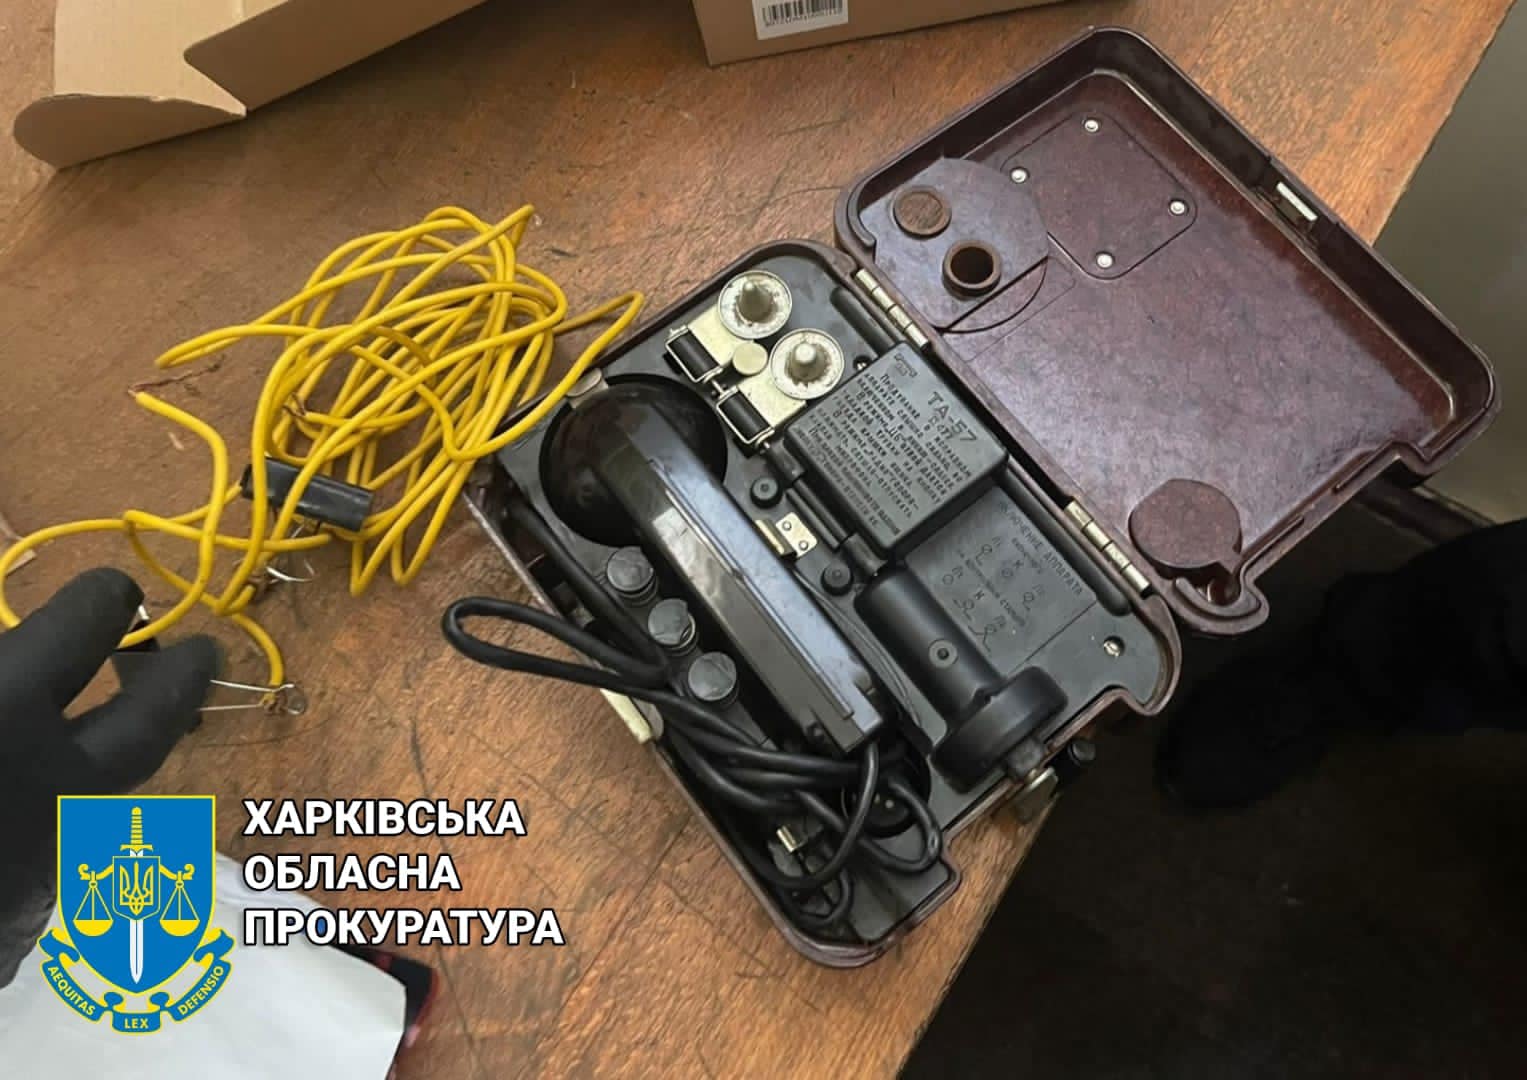 Прилад для катування струмом — телефонний апарат ТА-57. Фото з фейсбук-сторінки Харківської обласної прокуратури [воєнні злочини катування катування струмом тапік] An instrument of torture by electric shock: field telephone TA-57 (Facebook page of Kharkiv Region Procuracy)